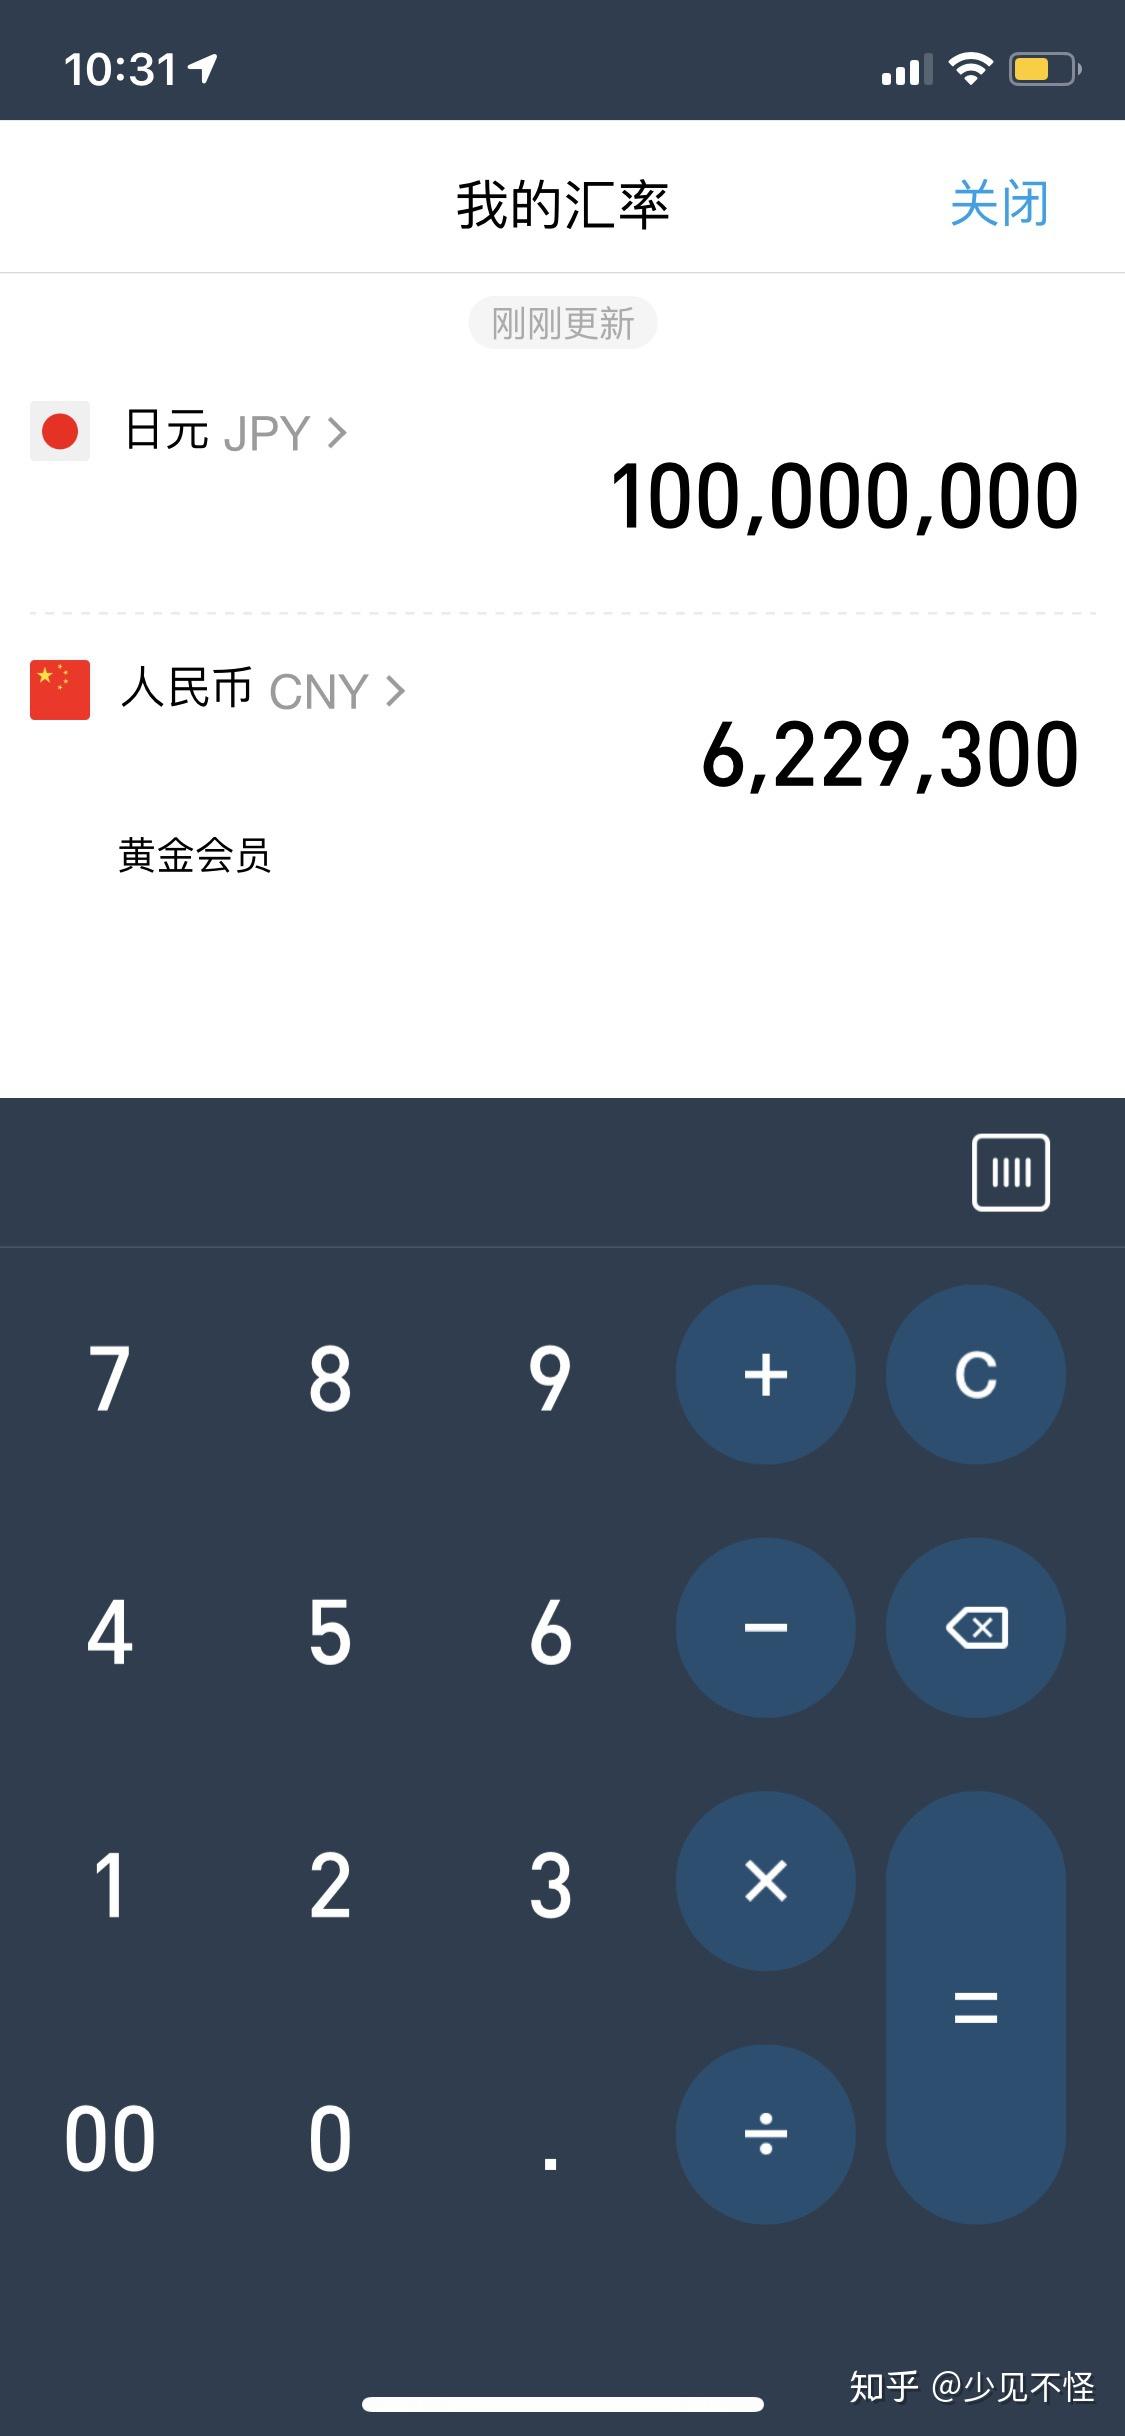 一亿日元等于多少人民币?